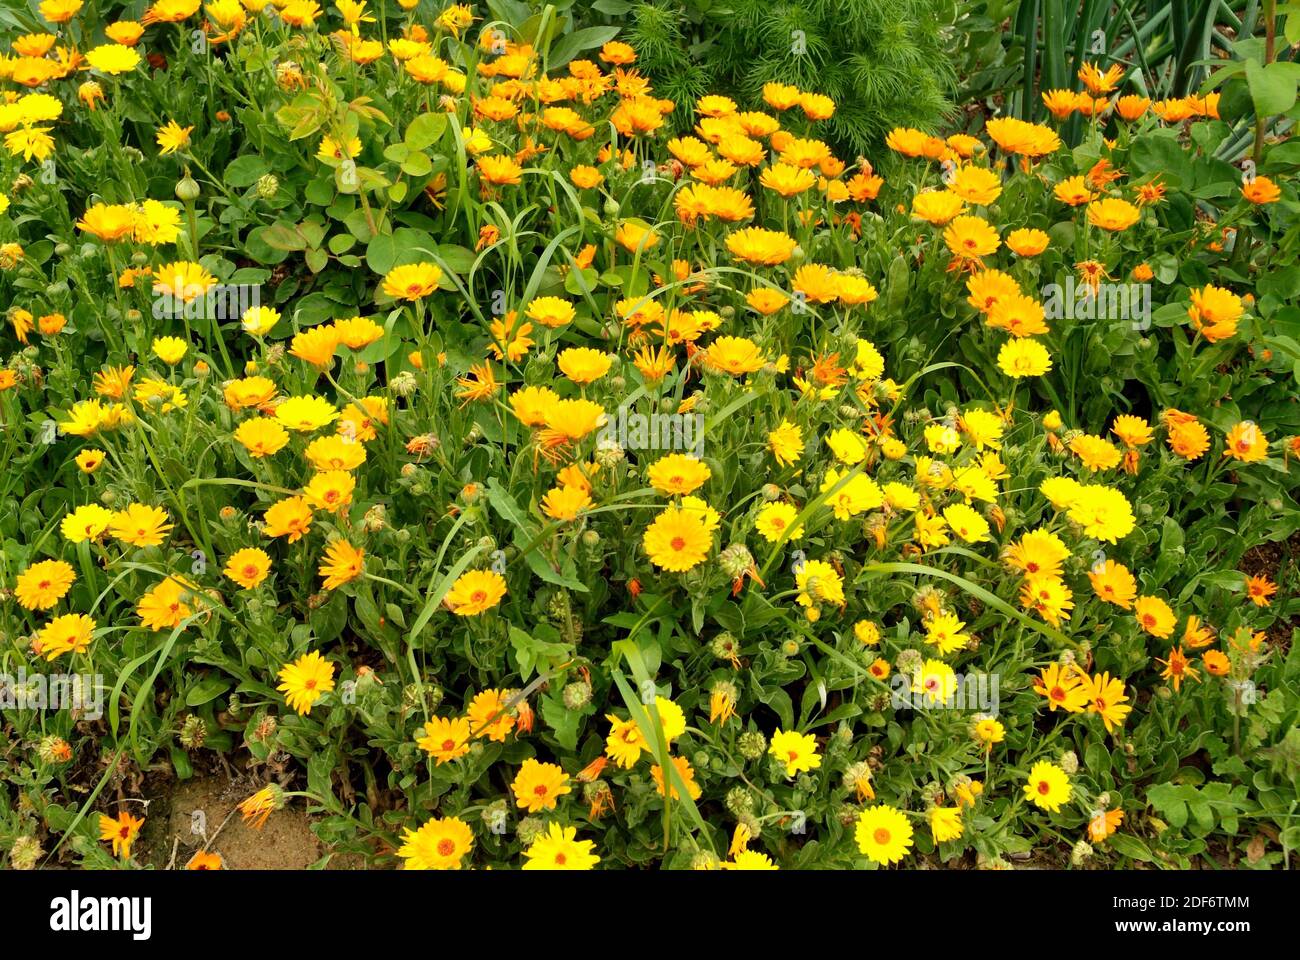 Il marigold di campo (Calendula arvensis) è un'erba annuale o biennale originaria del bacino mediterraneo. Foto Stock